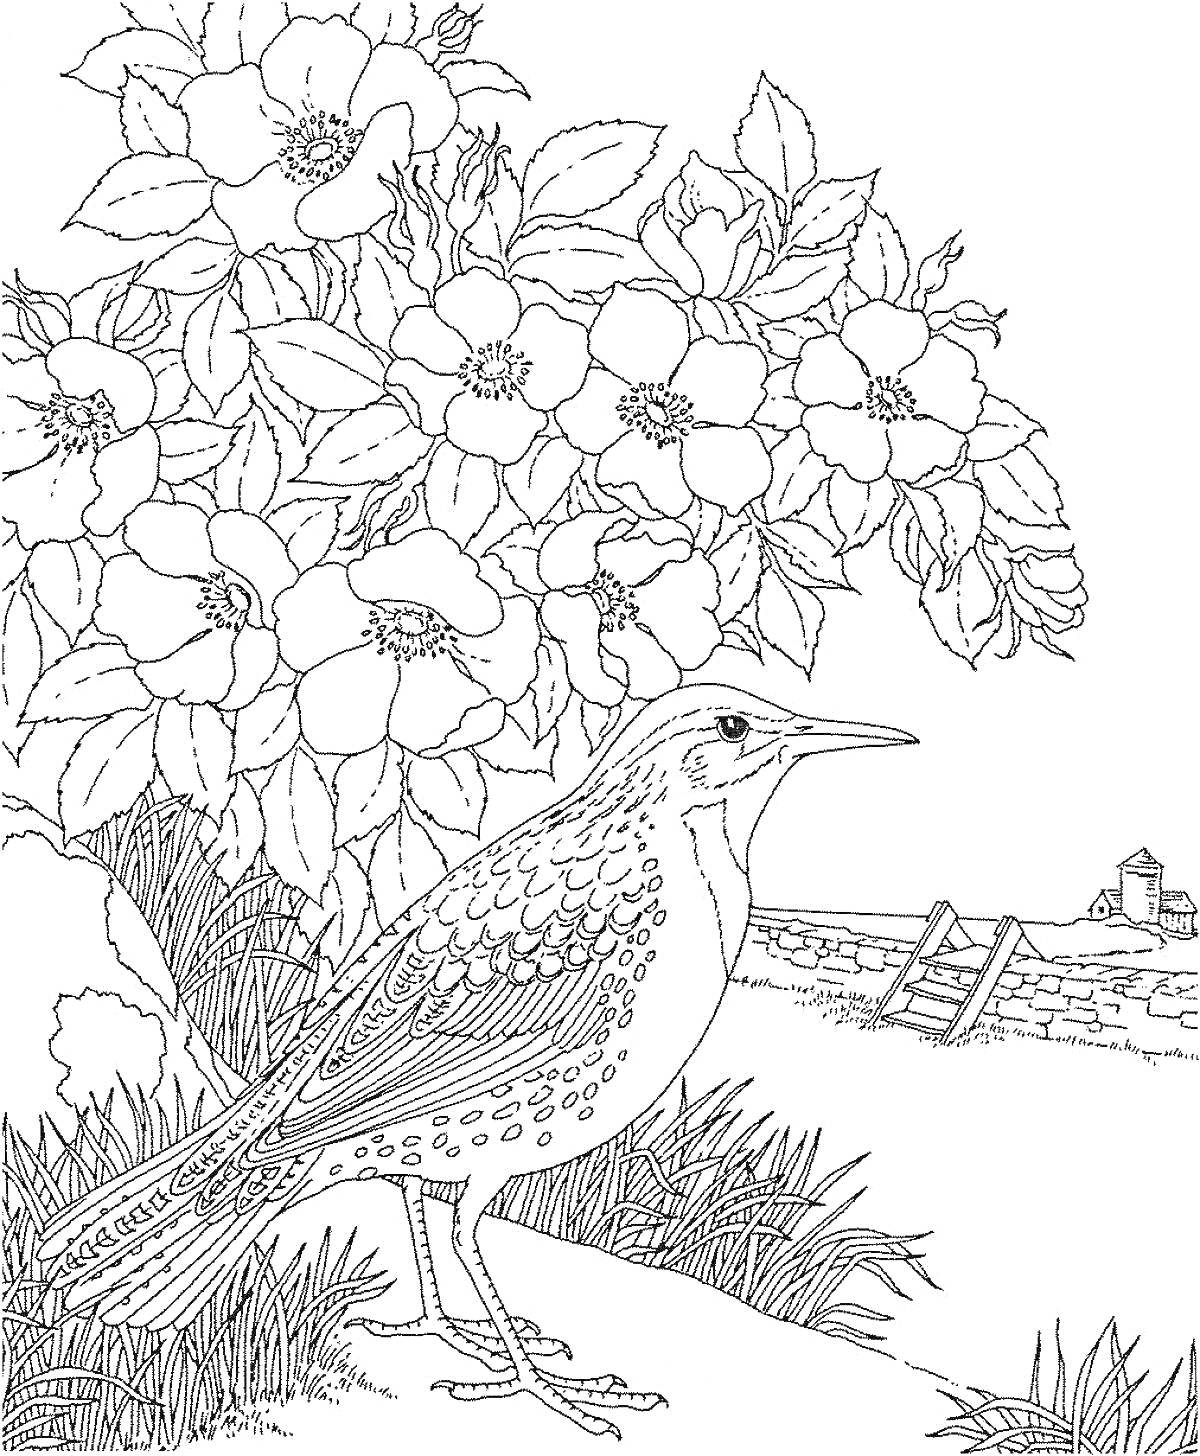 Раскраска Птица на фоне цветущего куста и сельского пейзажа с забором и зданием